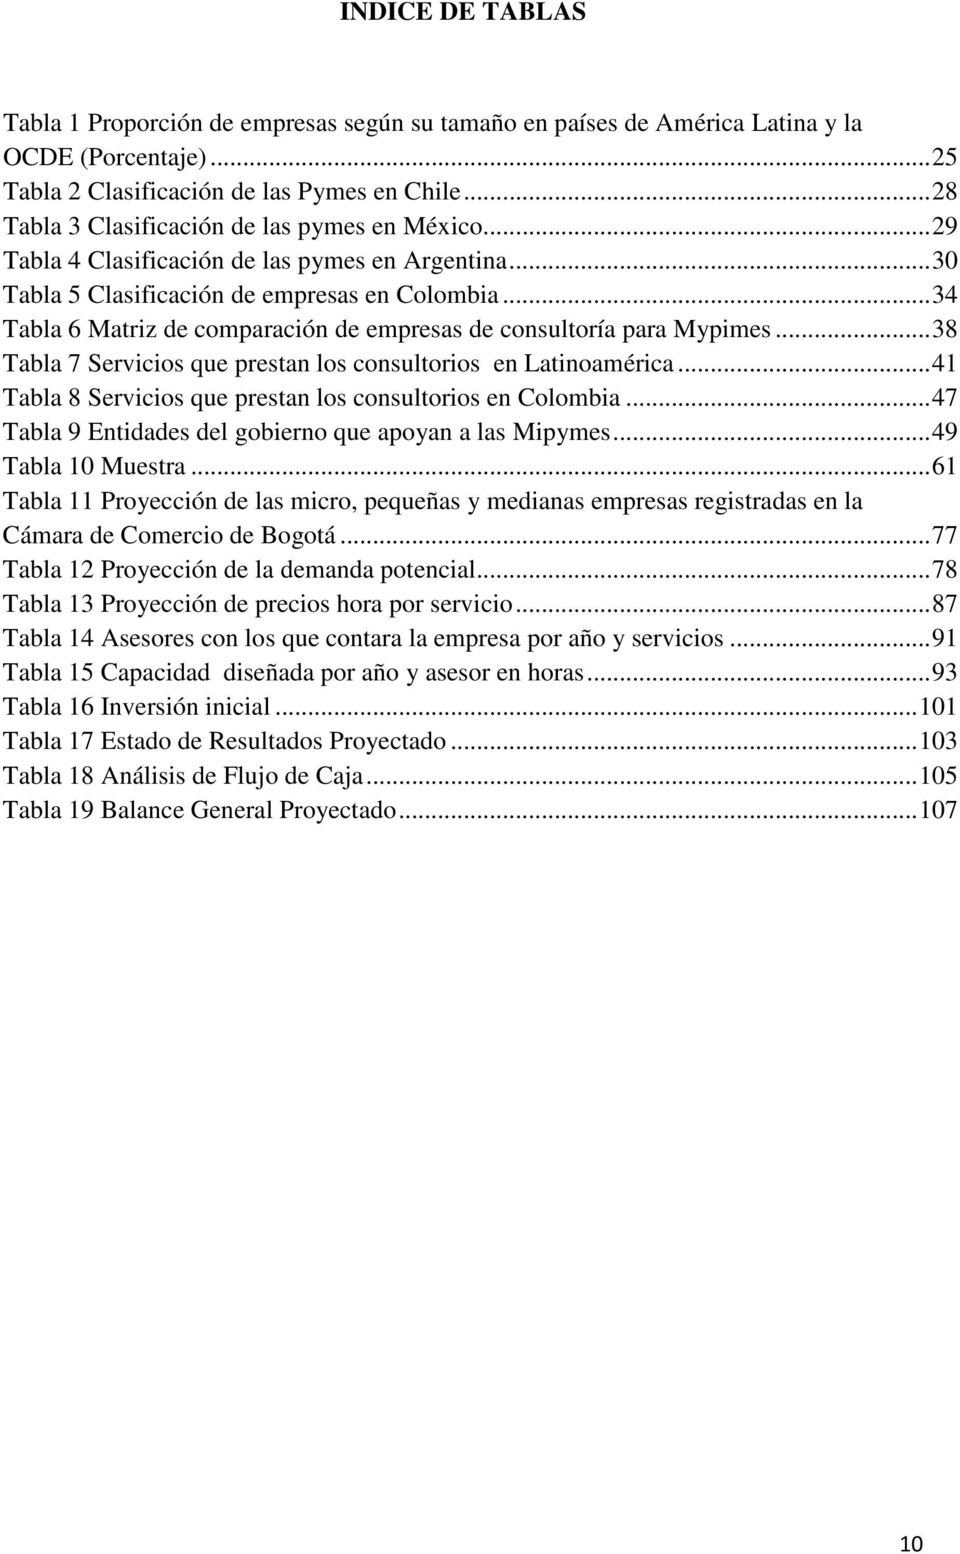 .. 34 Tabla 6 Matriz de comparación de empresas de consultoría para Mypimes... 38 Tabla 7 Servicios que prestan los consultorios en Latinoamérica.